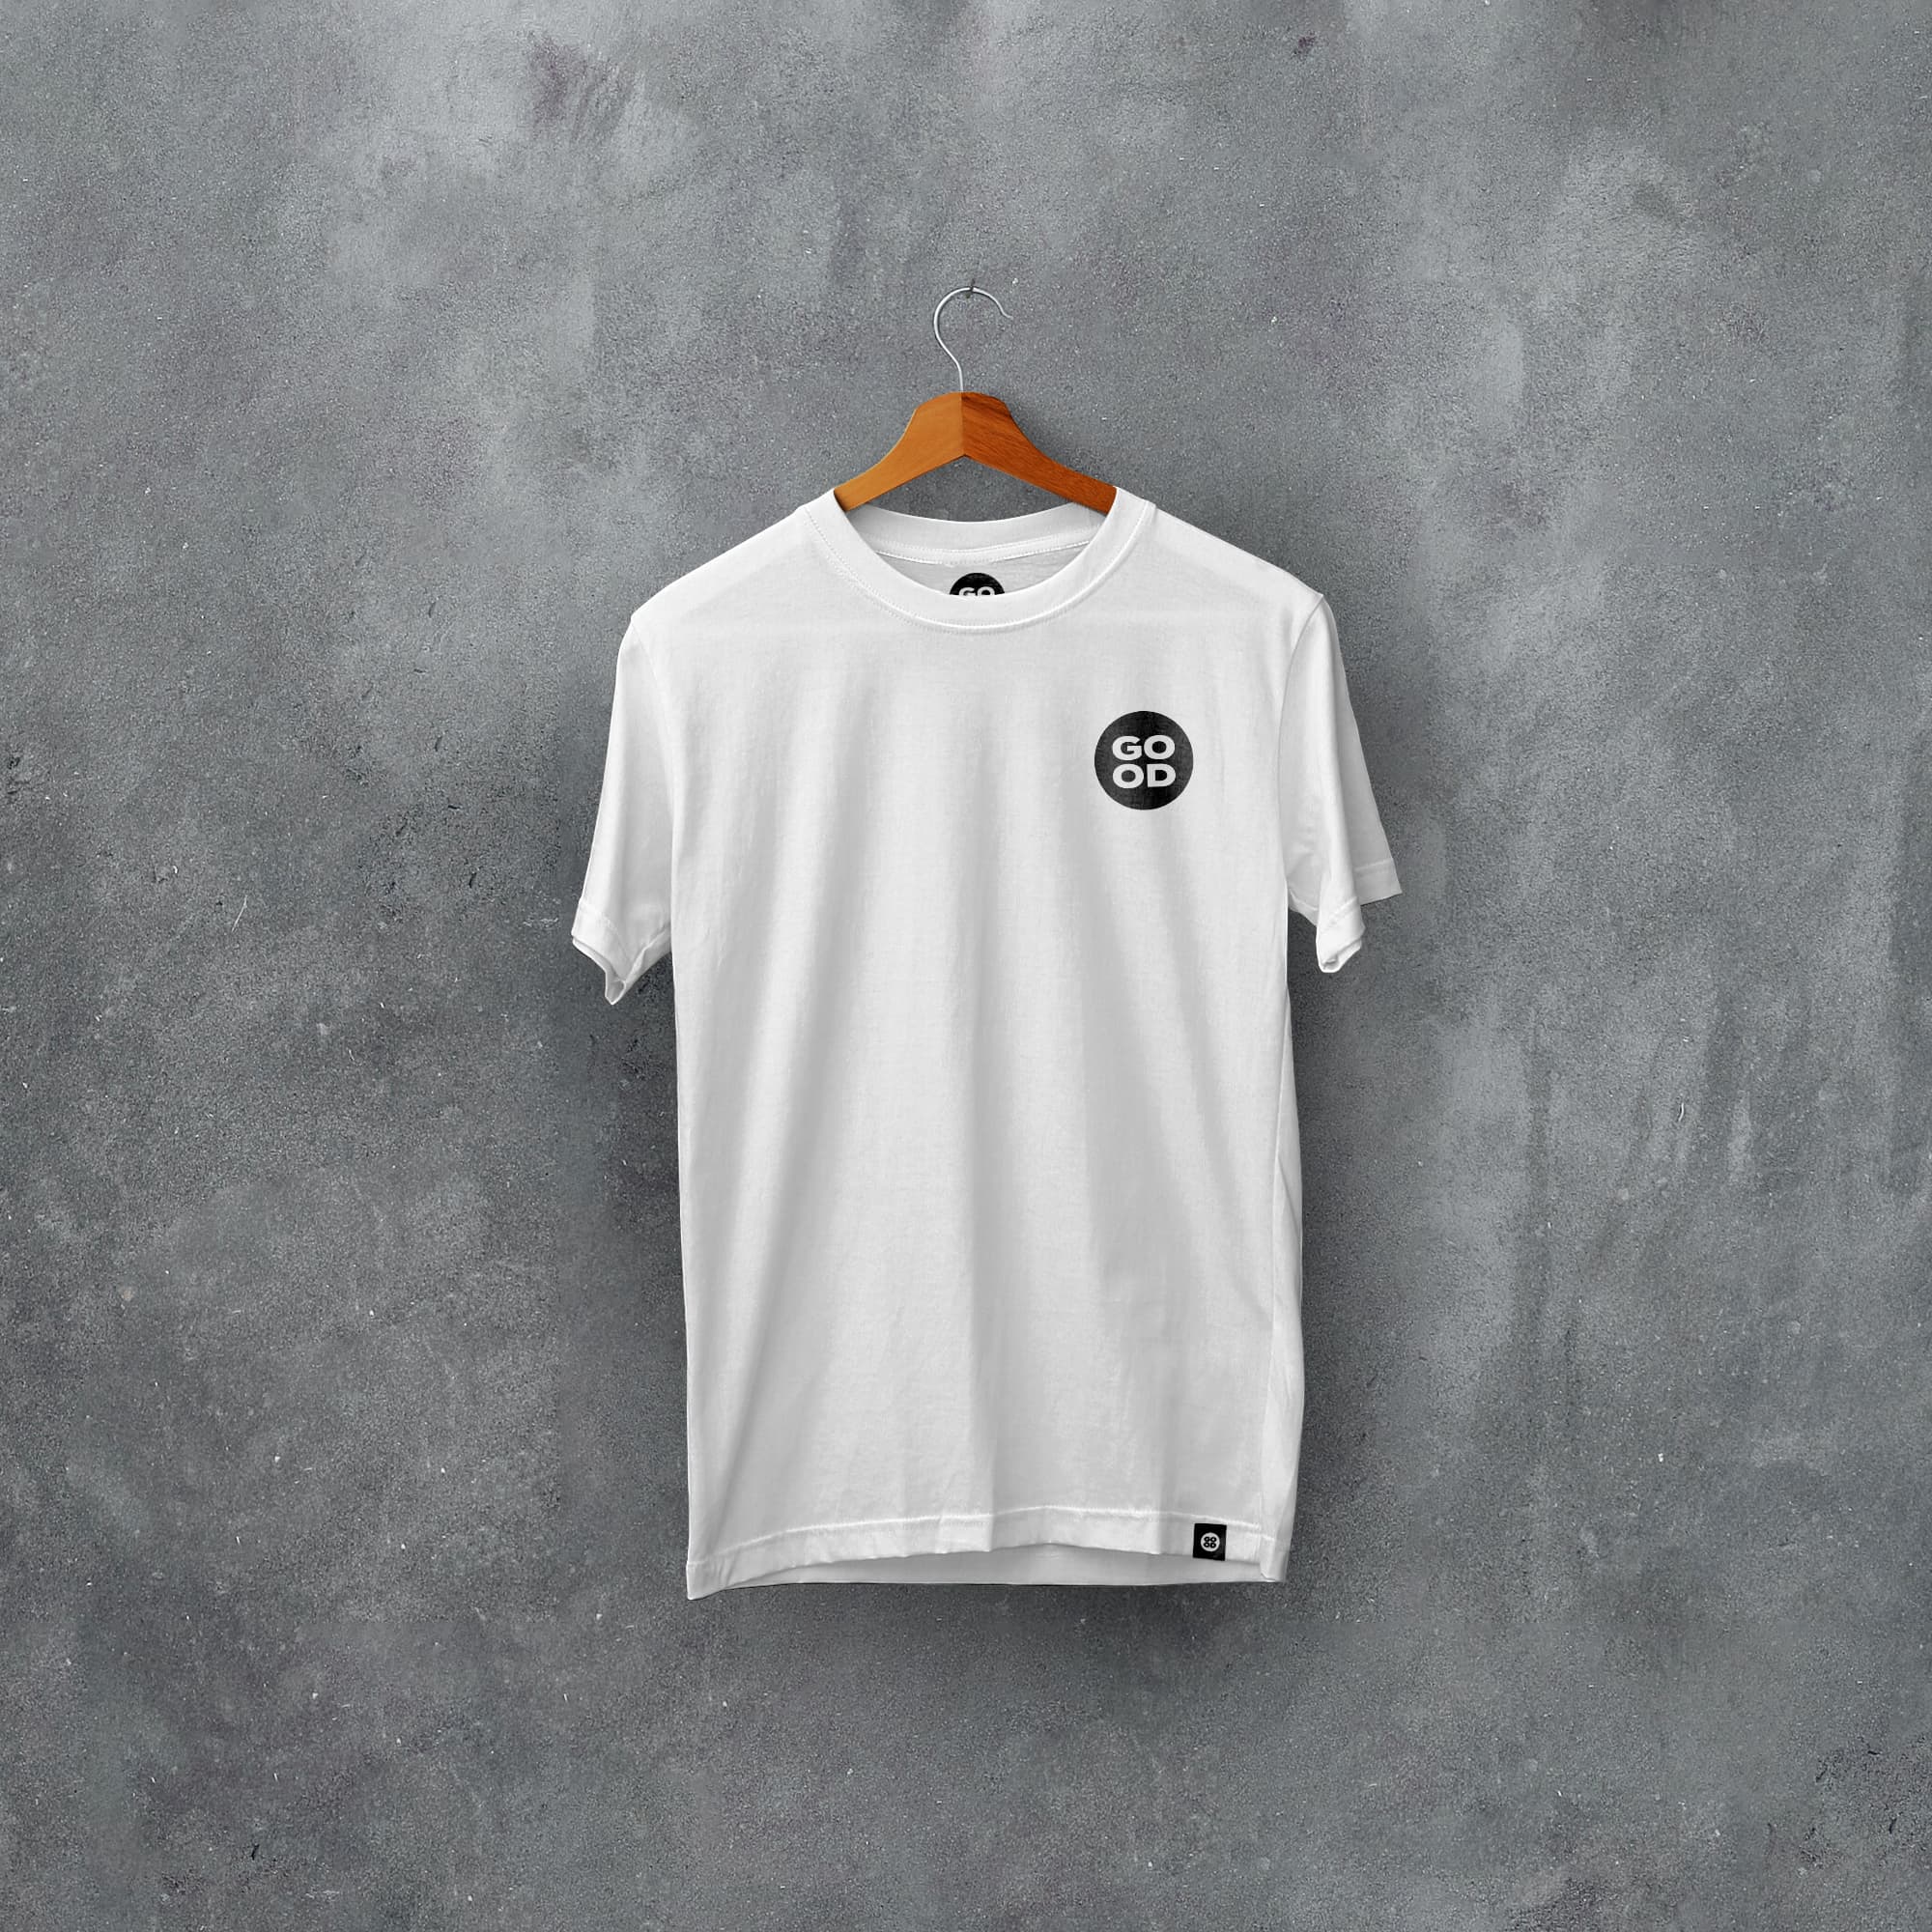 Huddersfield Classic Kits Football T-Shirt